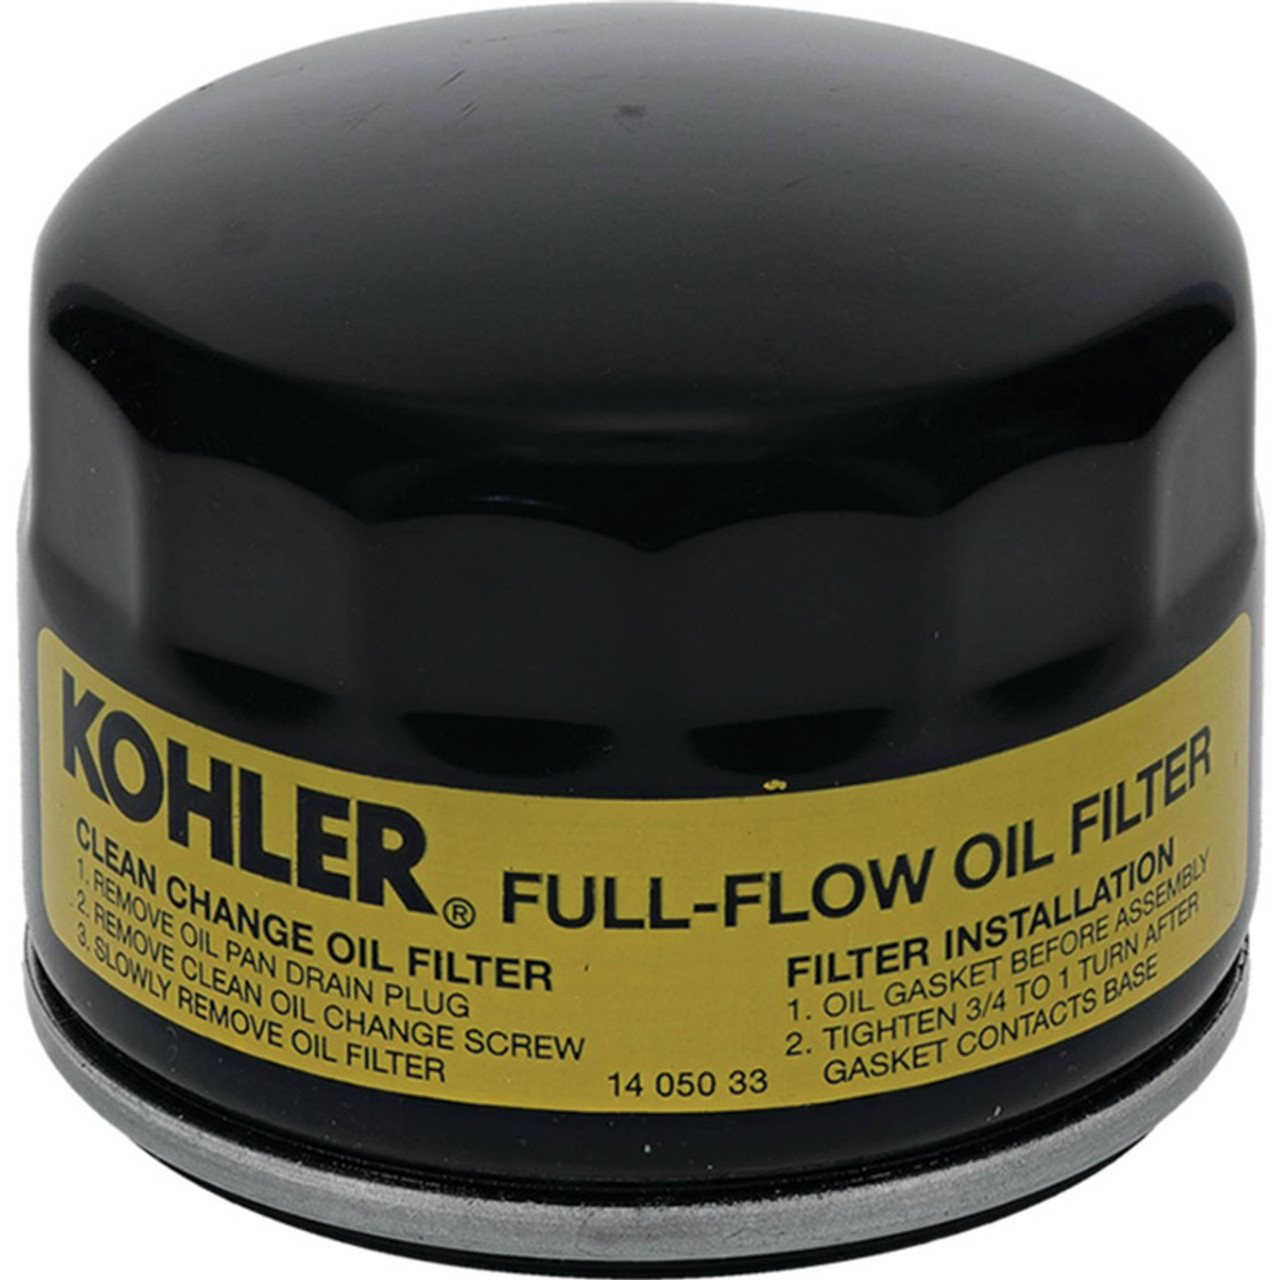 Kohler Oil Filter for CV173, CV200, CV224, 1405033S, 14 050 33-S